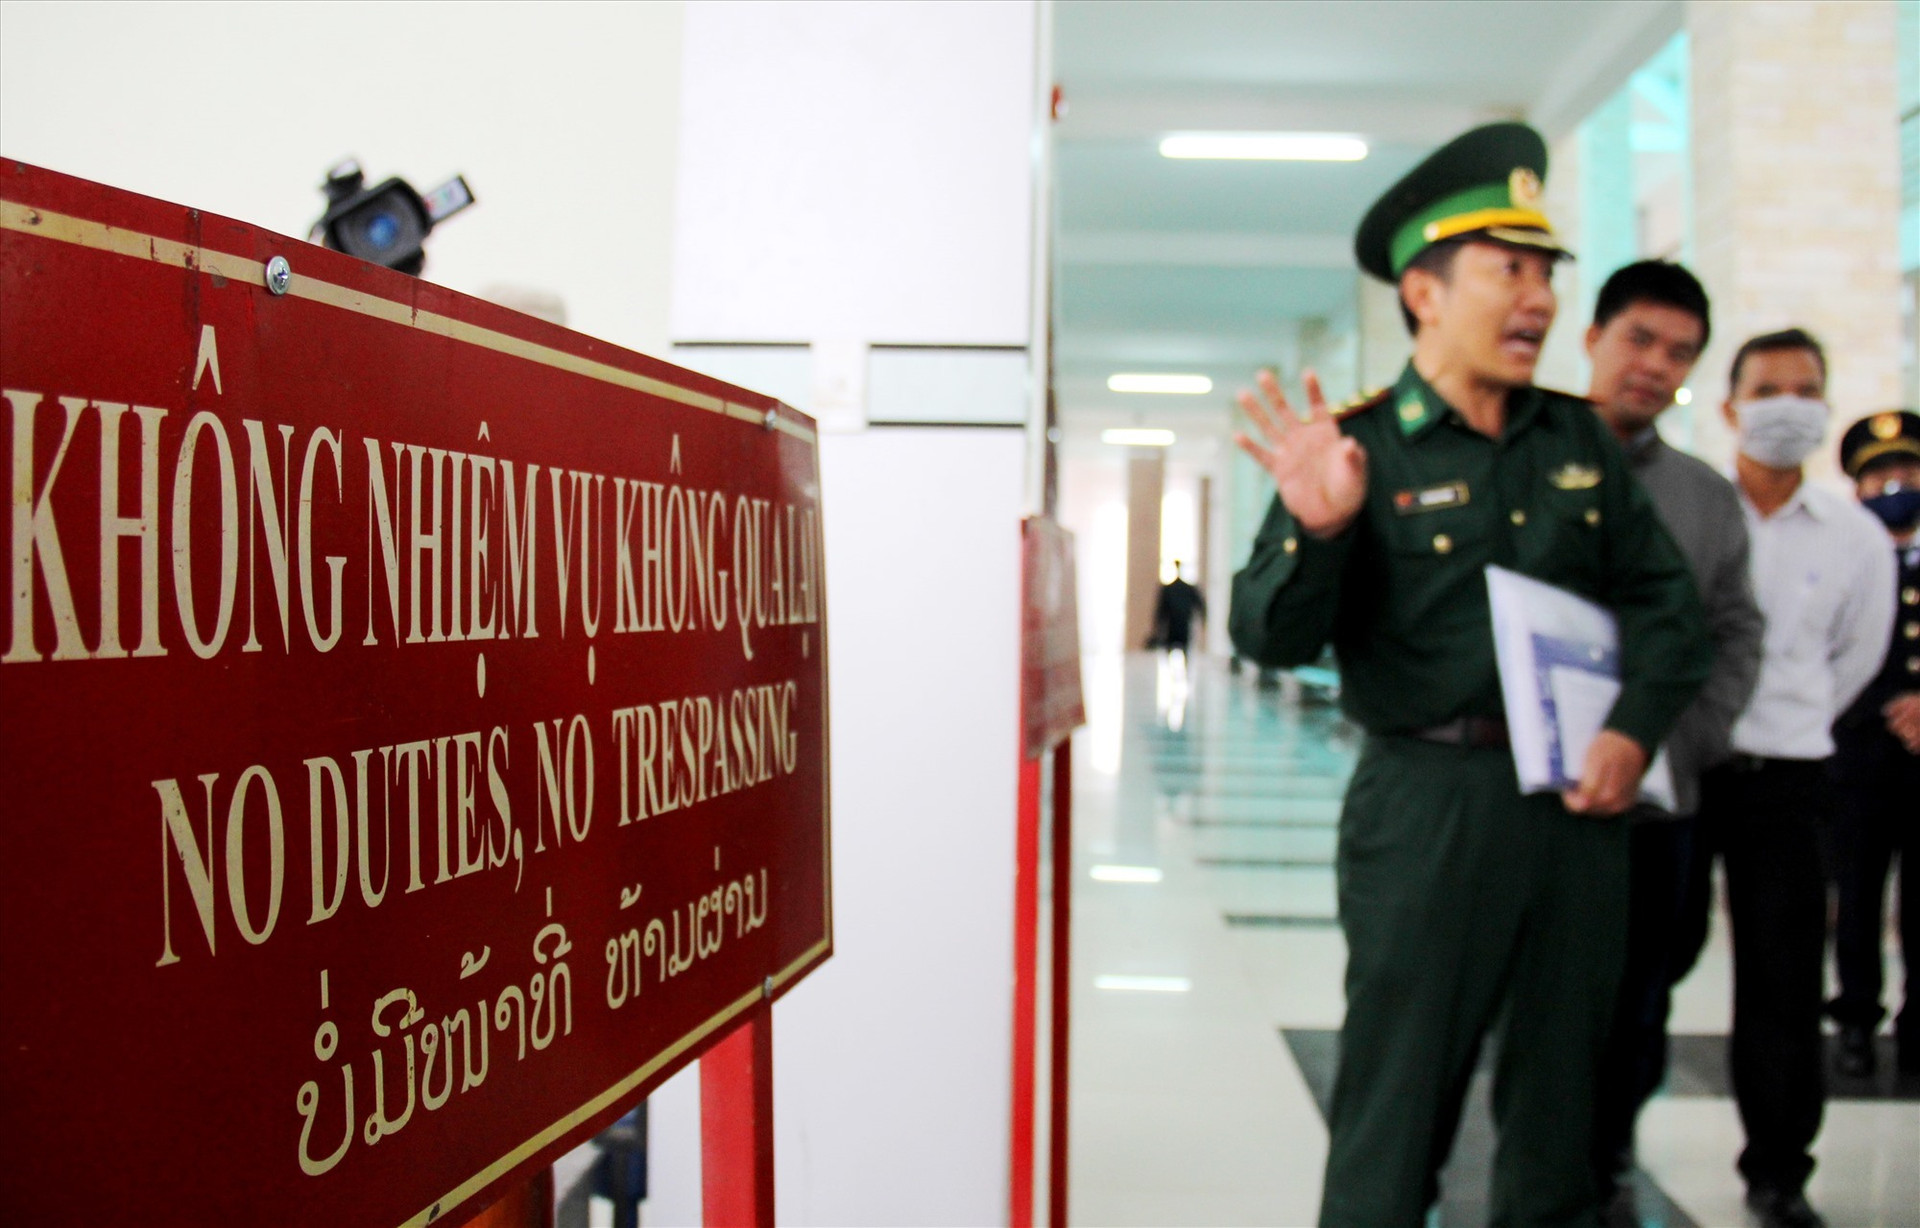 Khu vực cửa khẩu Nam Giang, nơi tiếp nhận và cách ly 9 công dân đồng bào Mông được lực lượng chức năng của Lào bàn giao. Ảnh: A.N